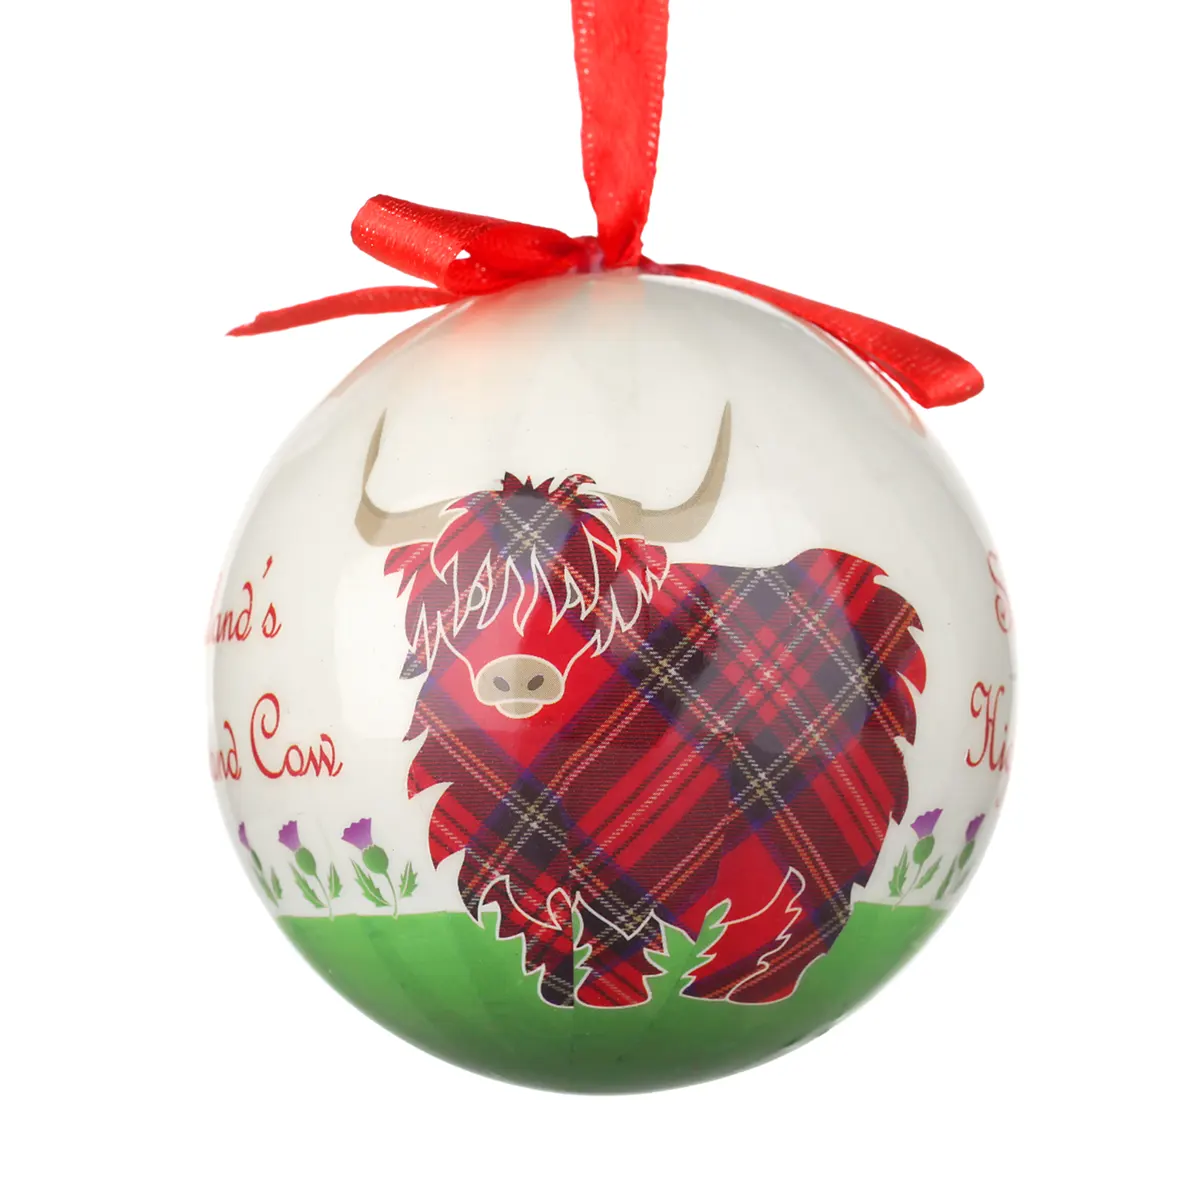 Highland Cow - Traditionell handgefertigte Weihnachtskugel mit schottischem Hochland-Rind